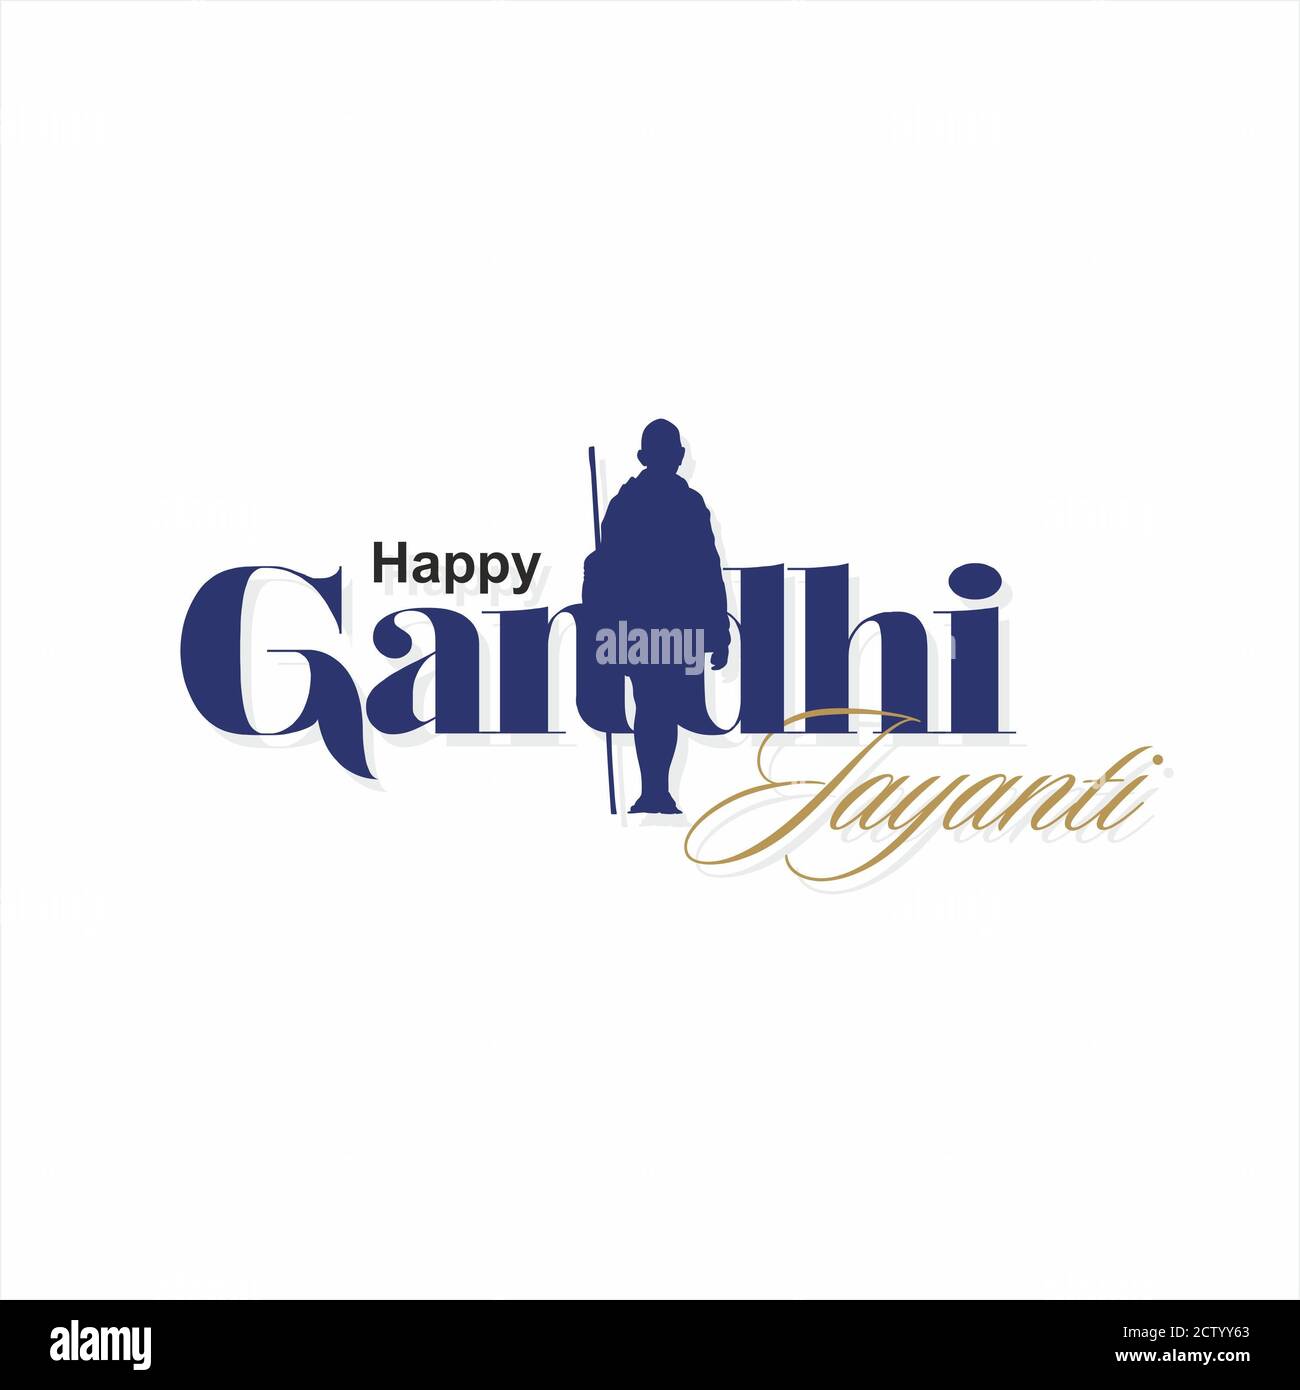 Banner de Happy Gandhi Jayanti | Ilustración Foto de stock